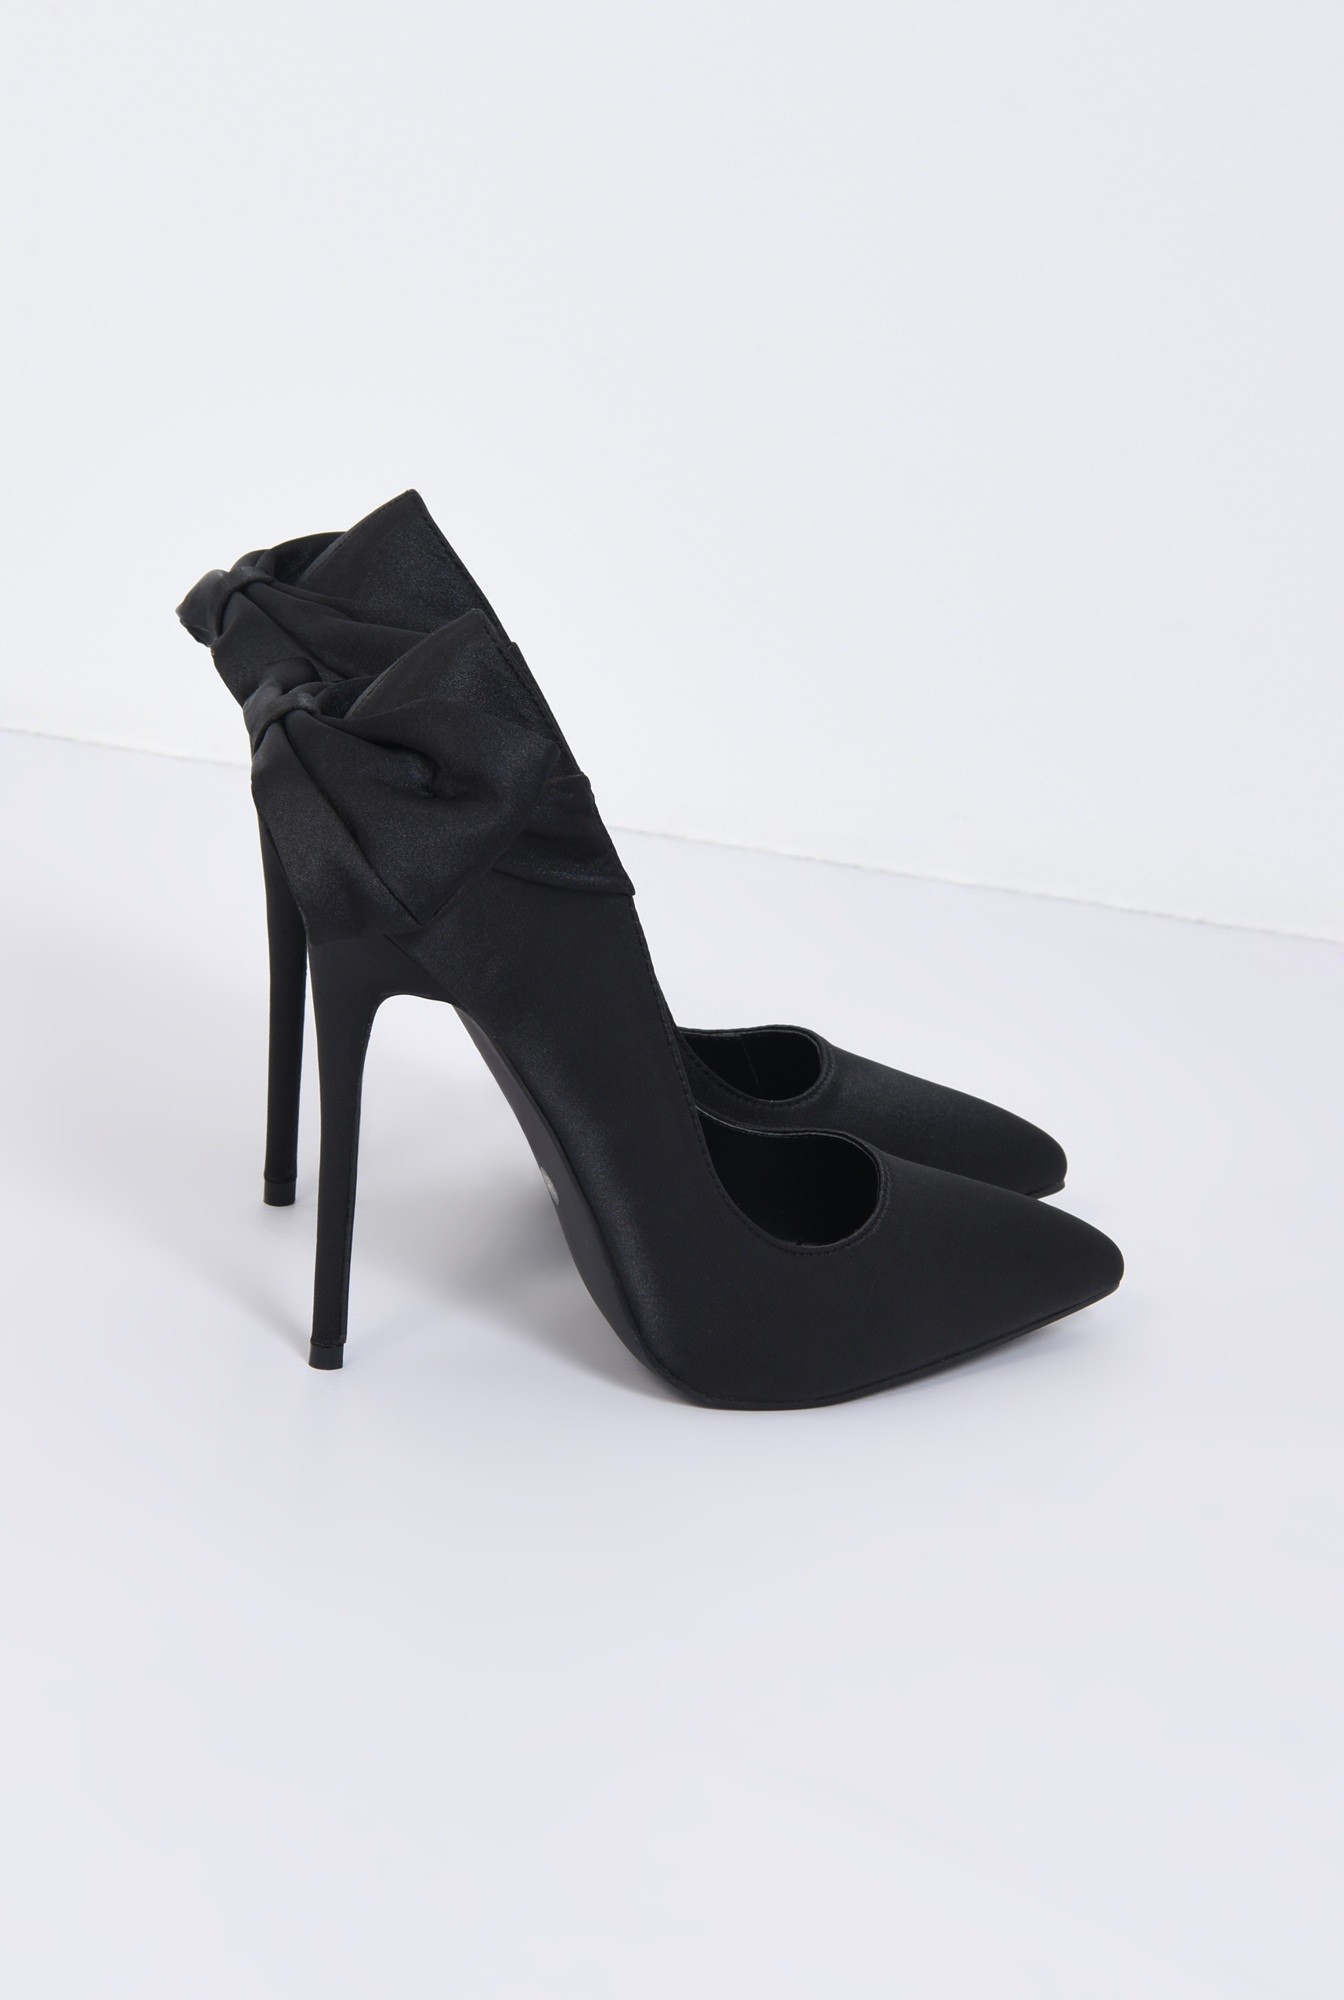 2 - pantofi eleganti, negru, satin, stiletto